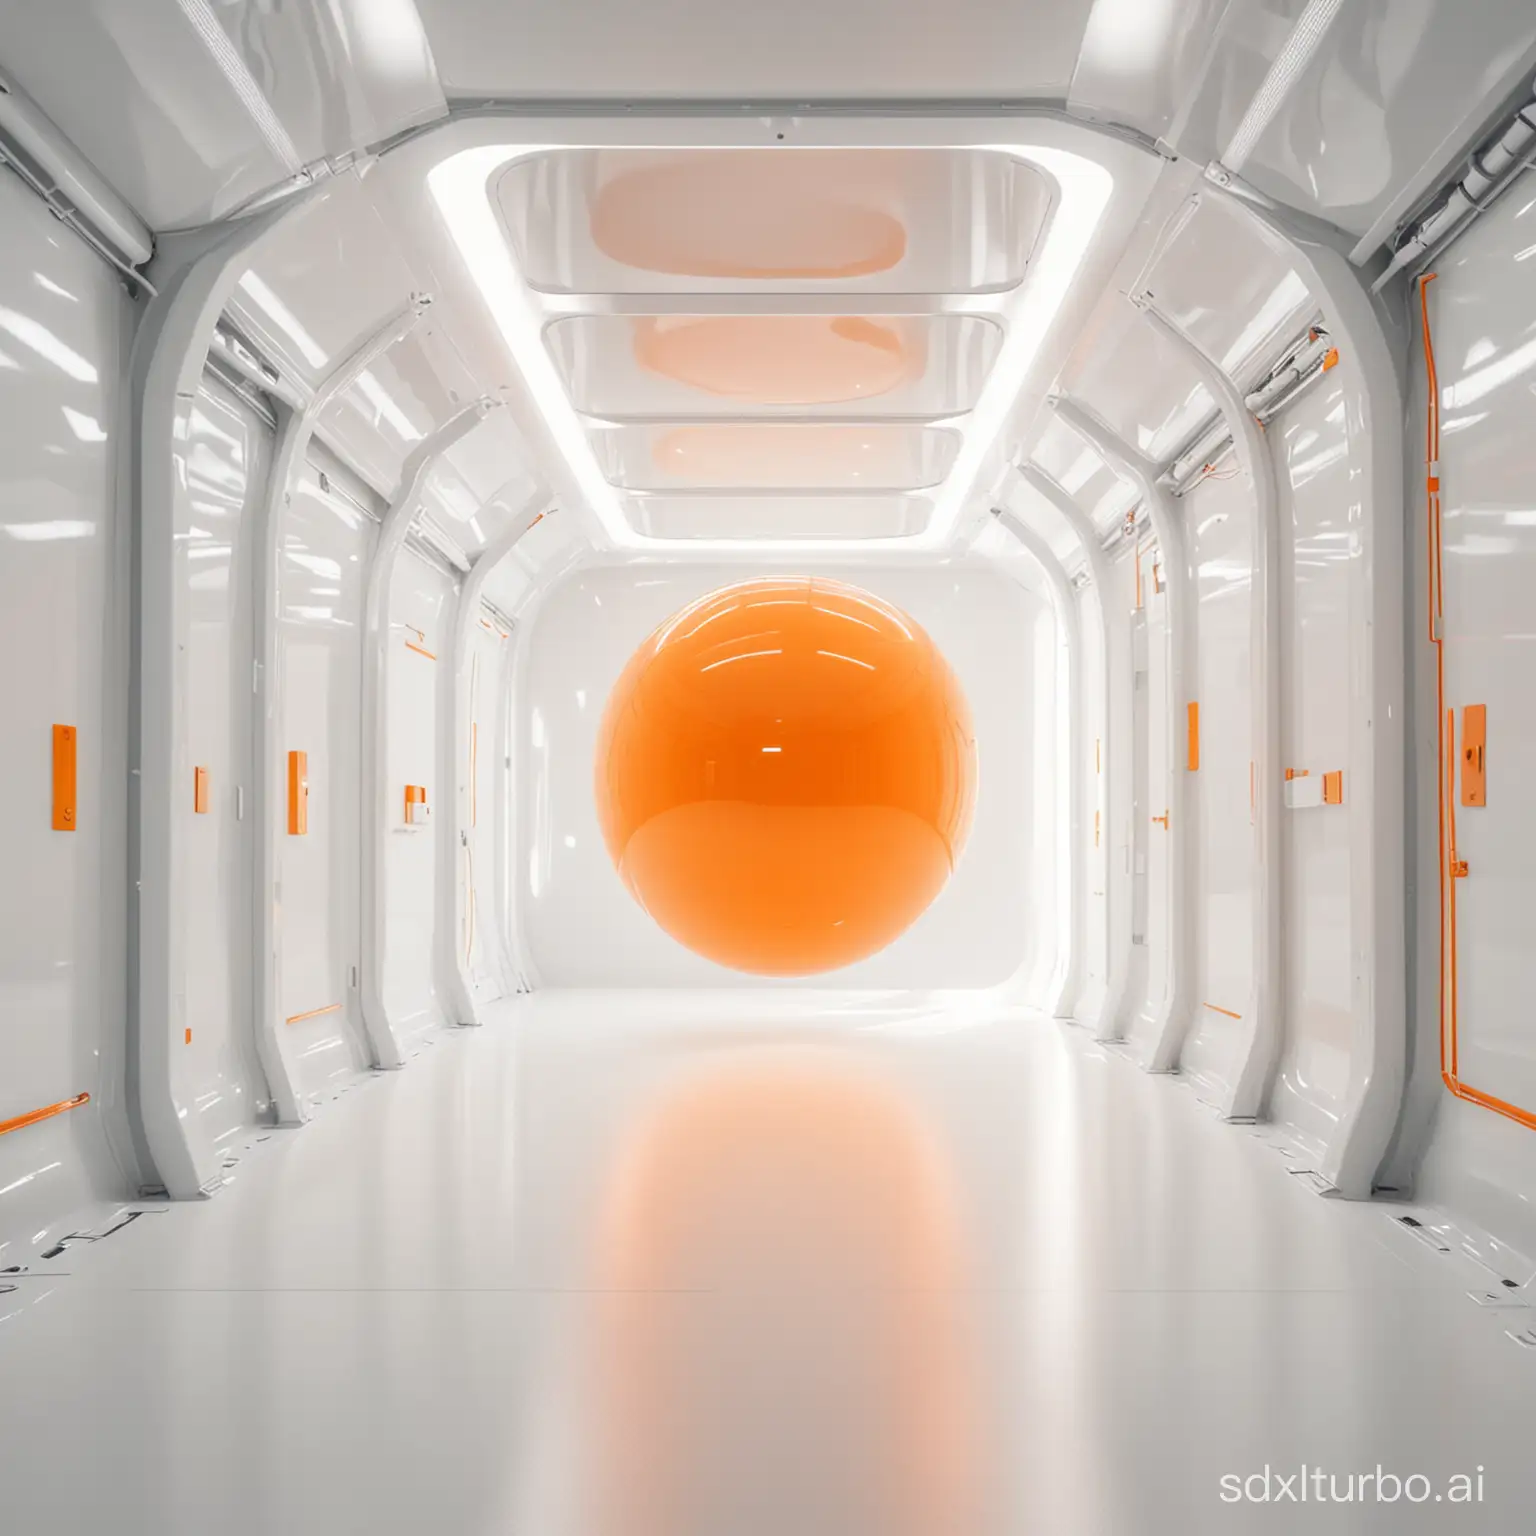 Futuristic-Orange-Sphere-Interior-Illuminated-Medicalcore-Aerial-View